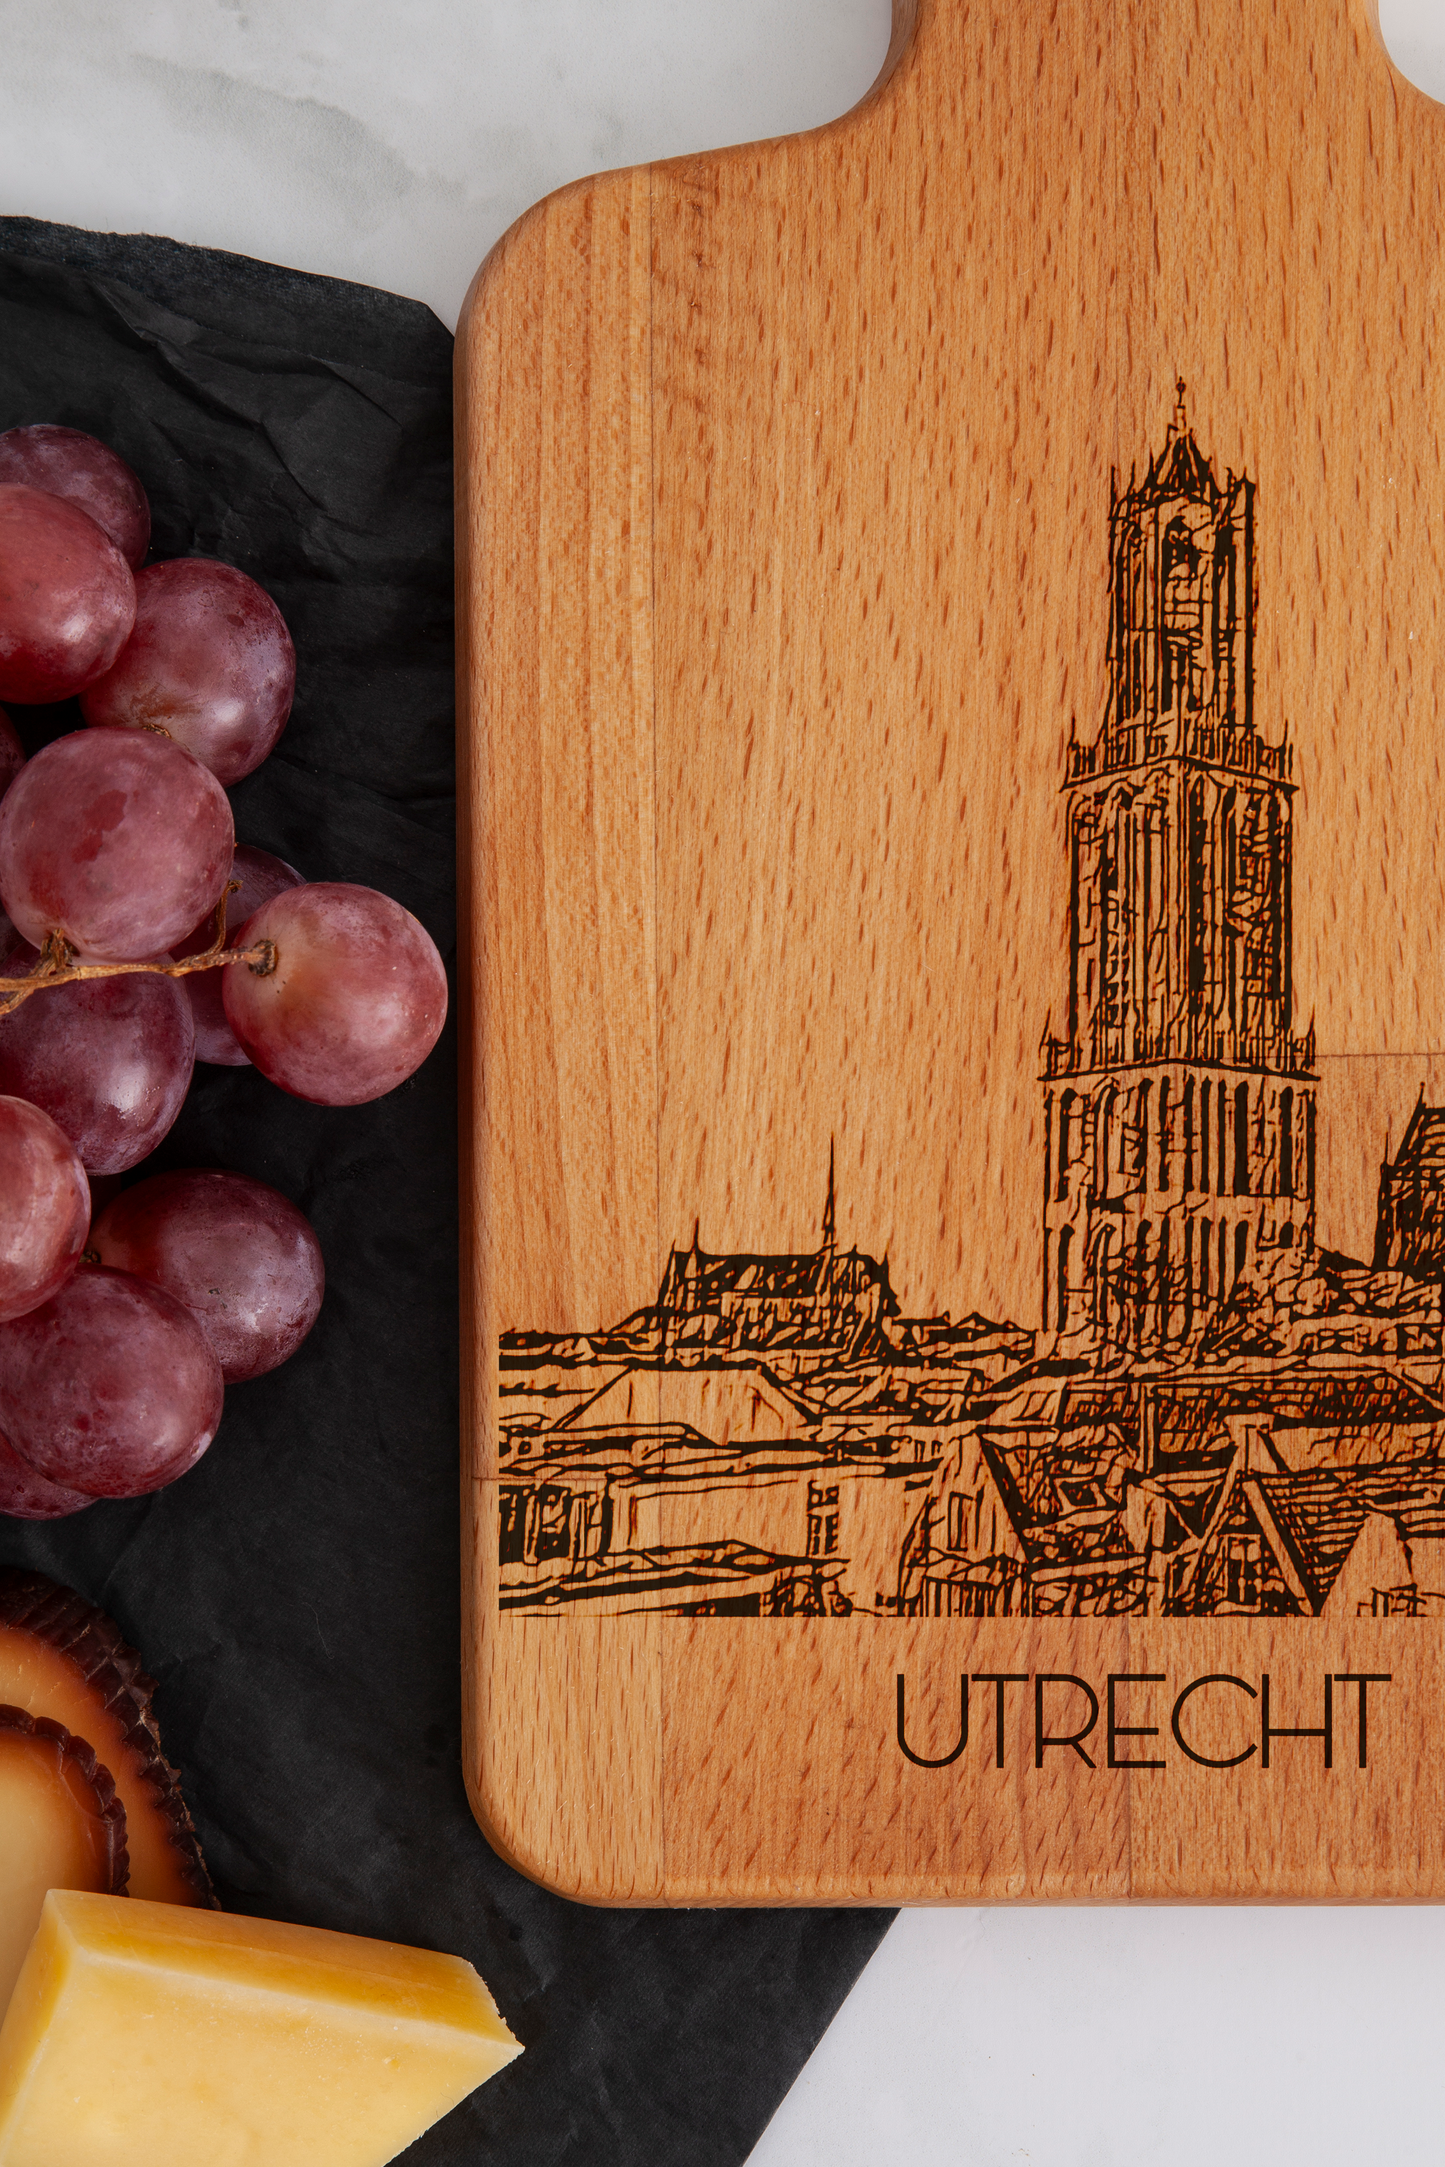 Utrecht, Domtoren, cheese board, close-up